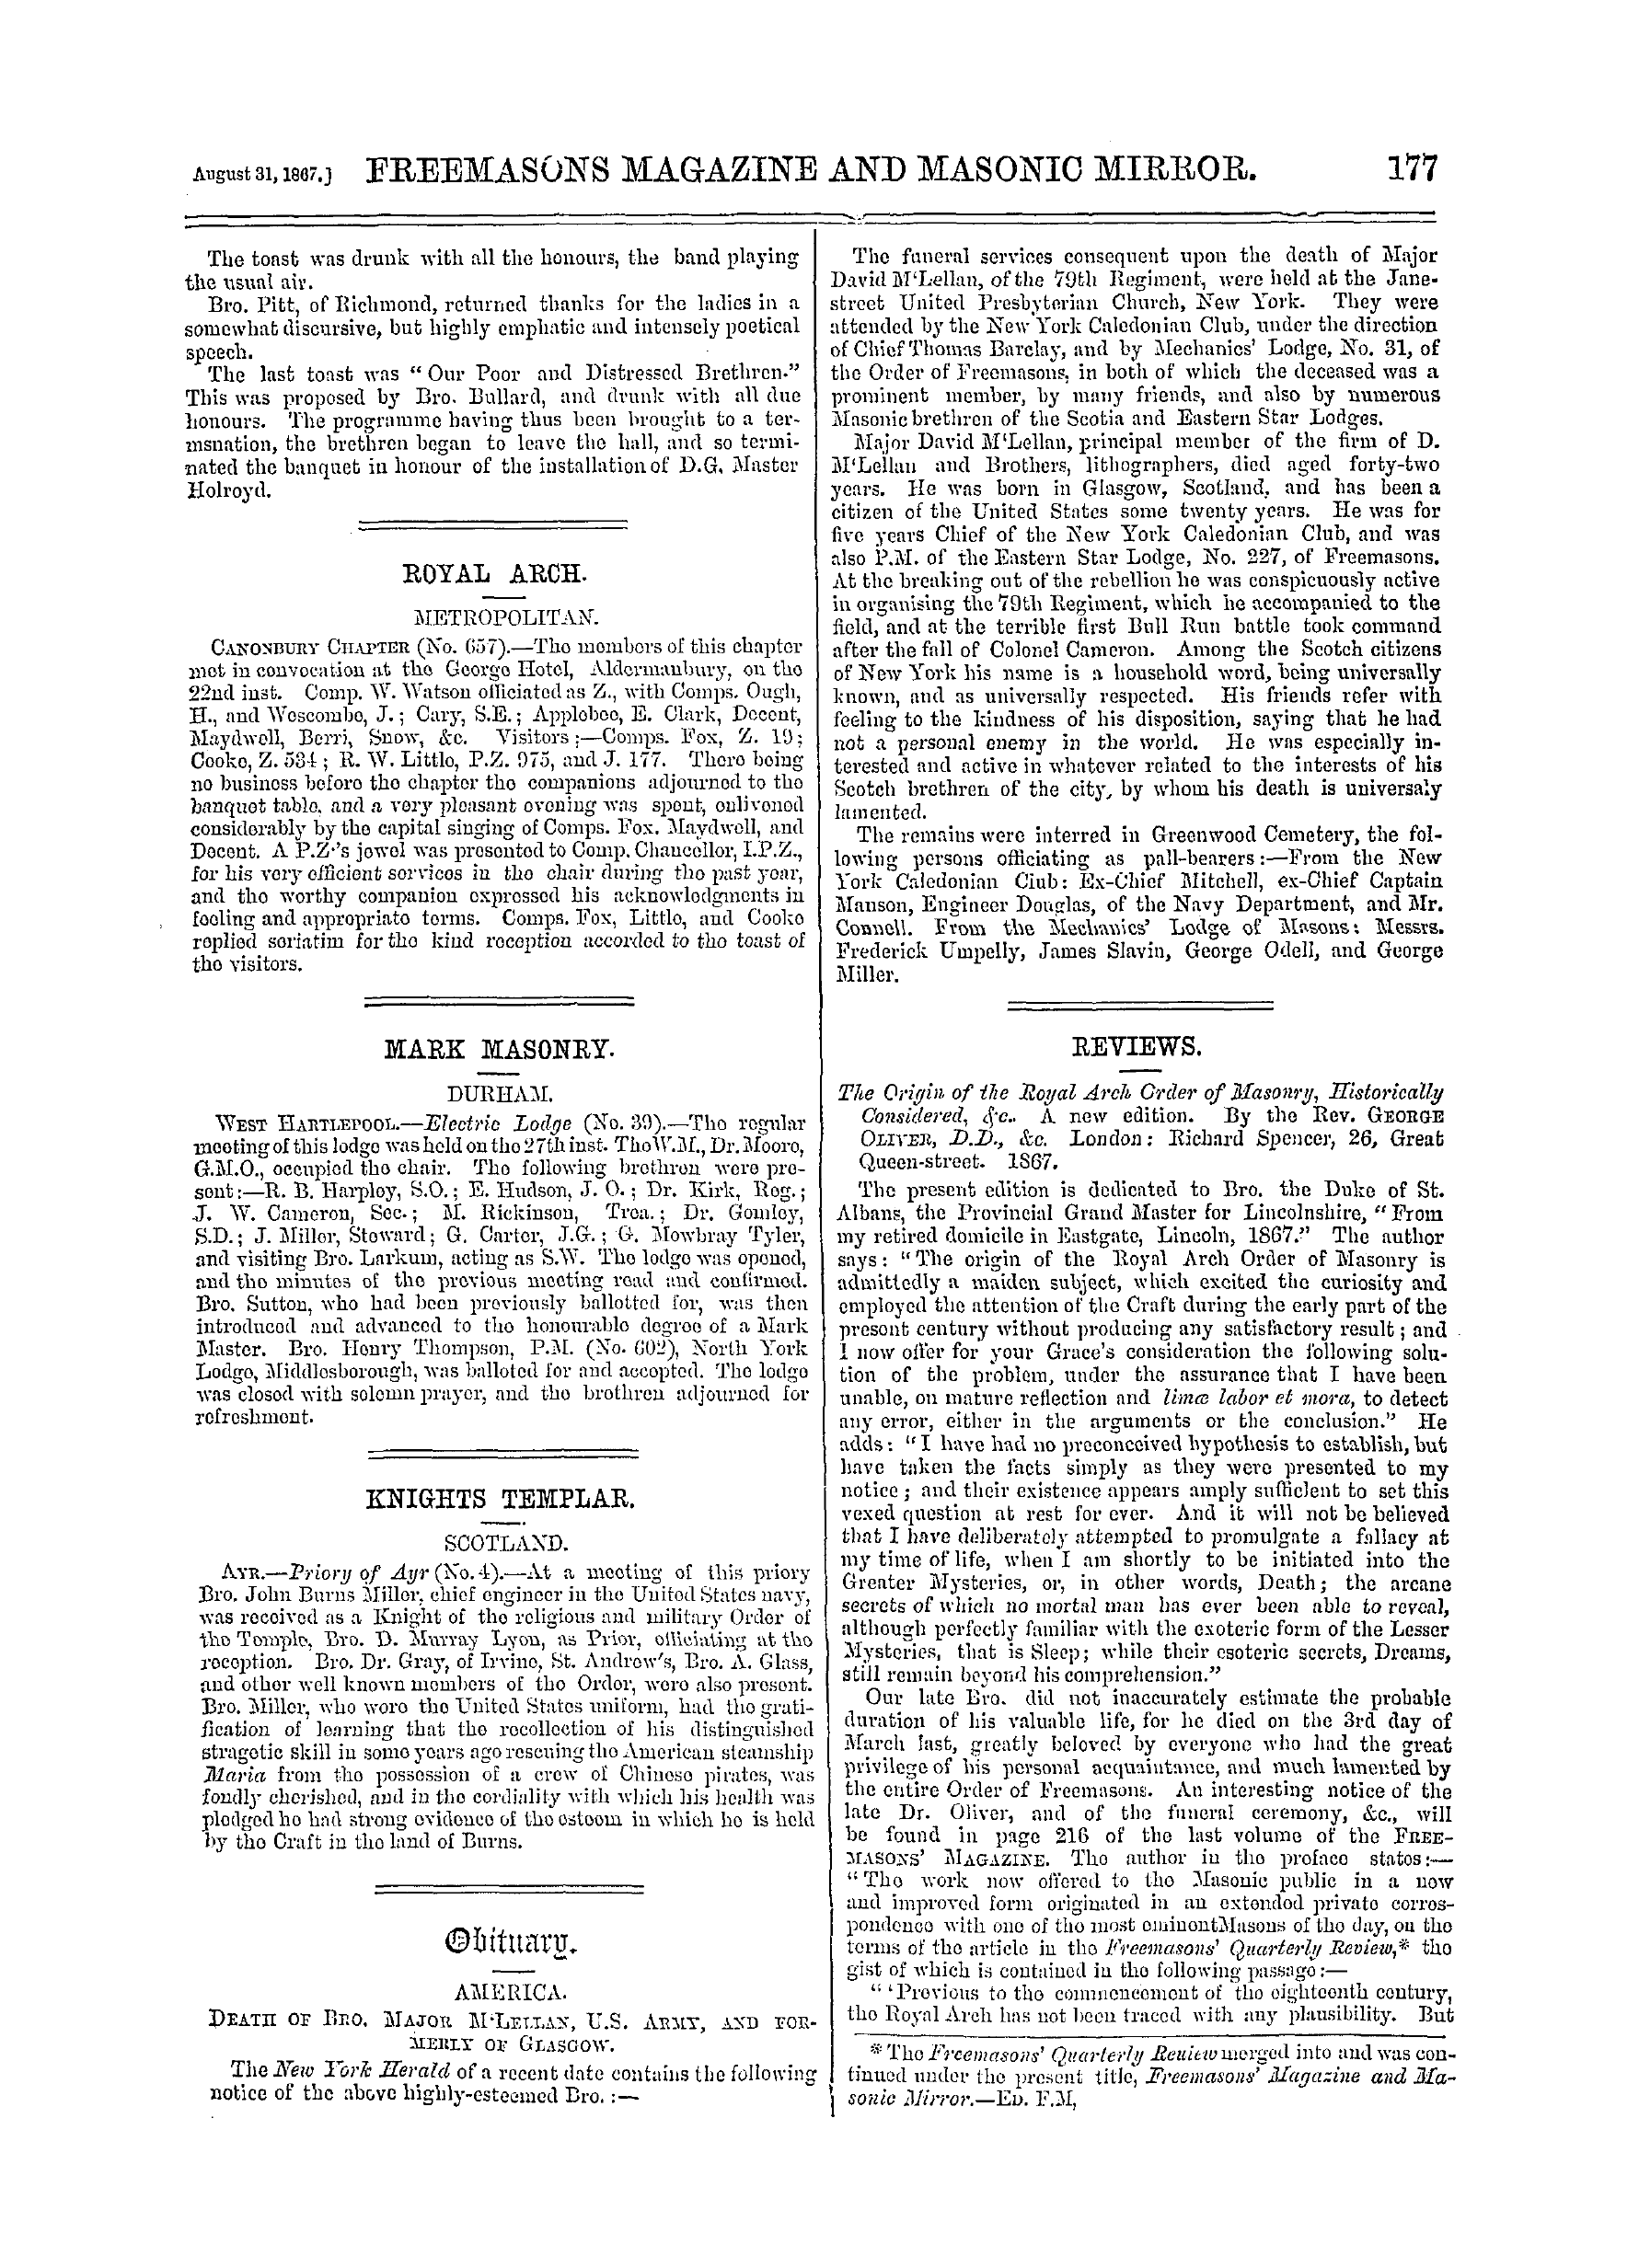 The Freemasons' Monthly Magazine: 1867-08-31: 17